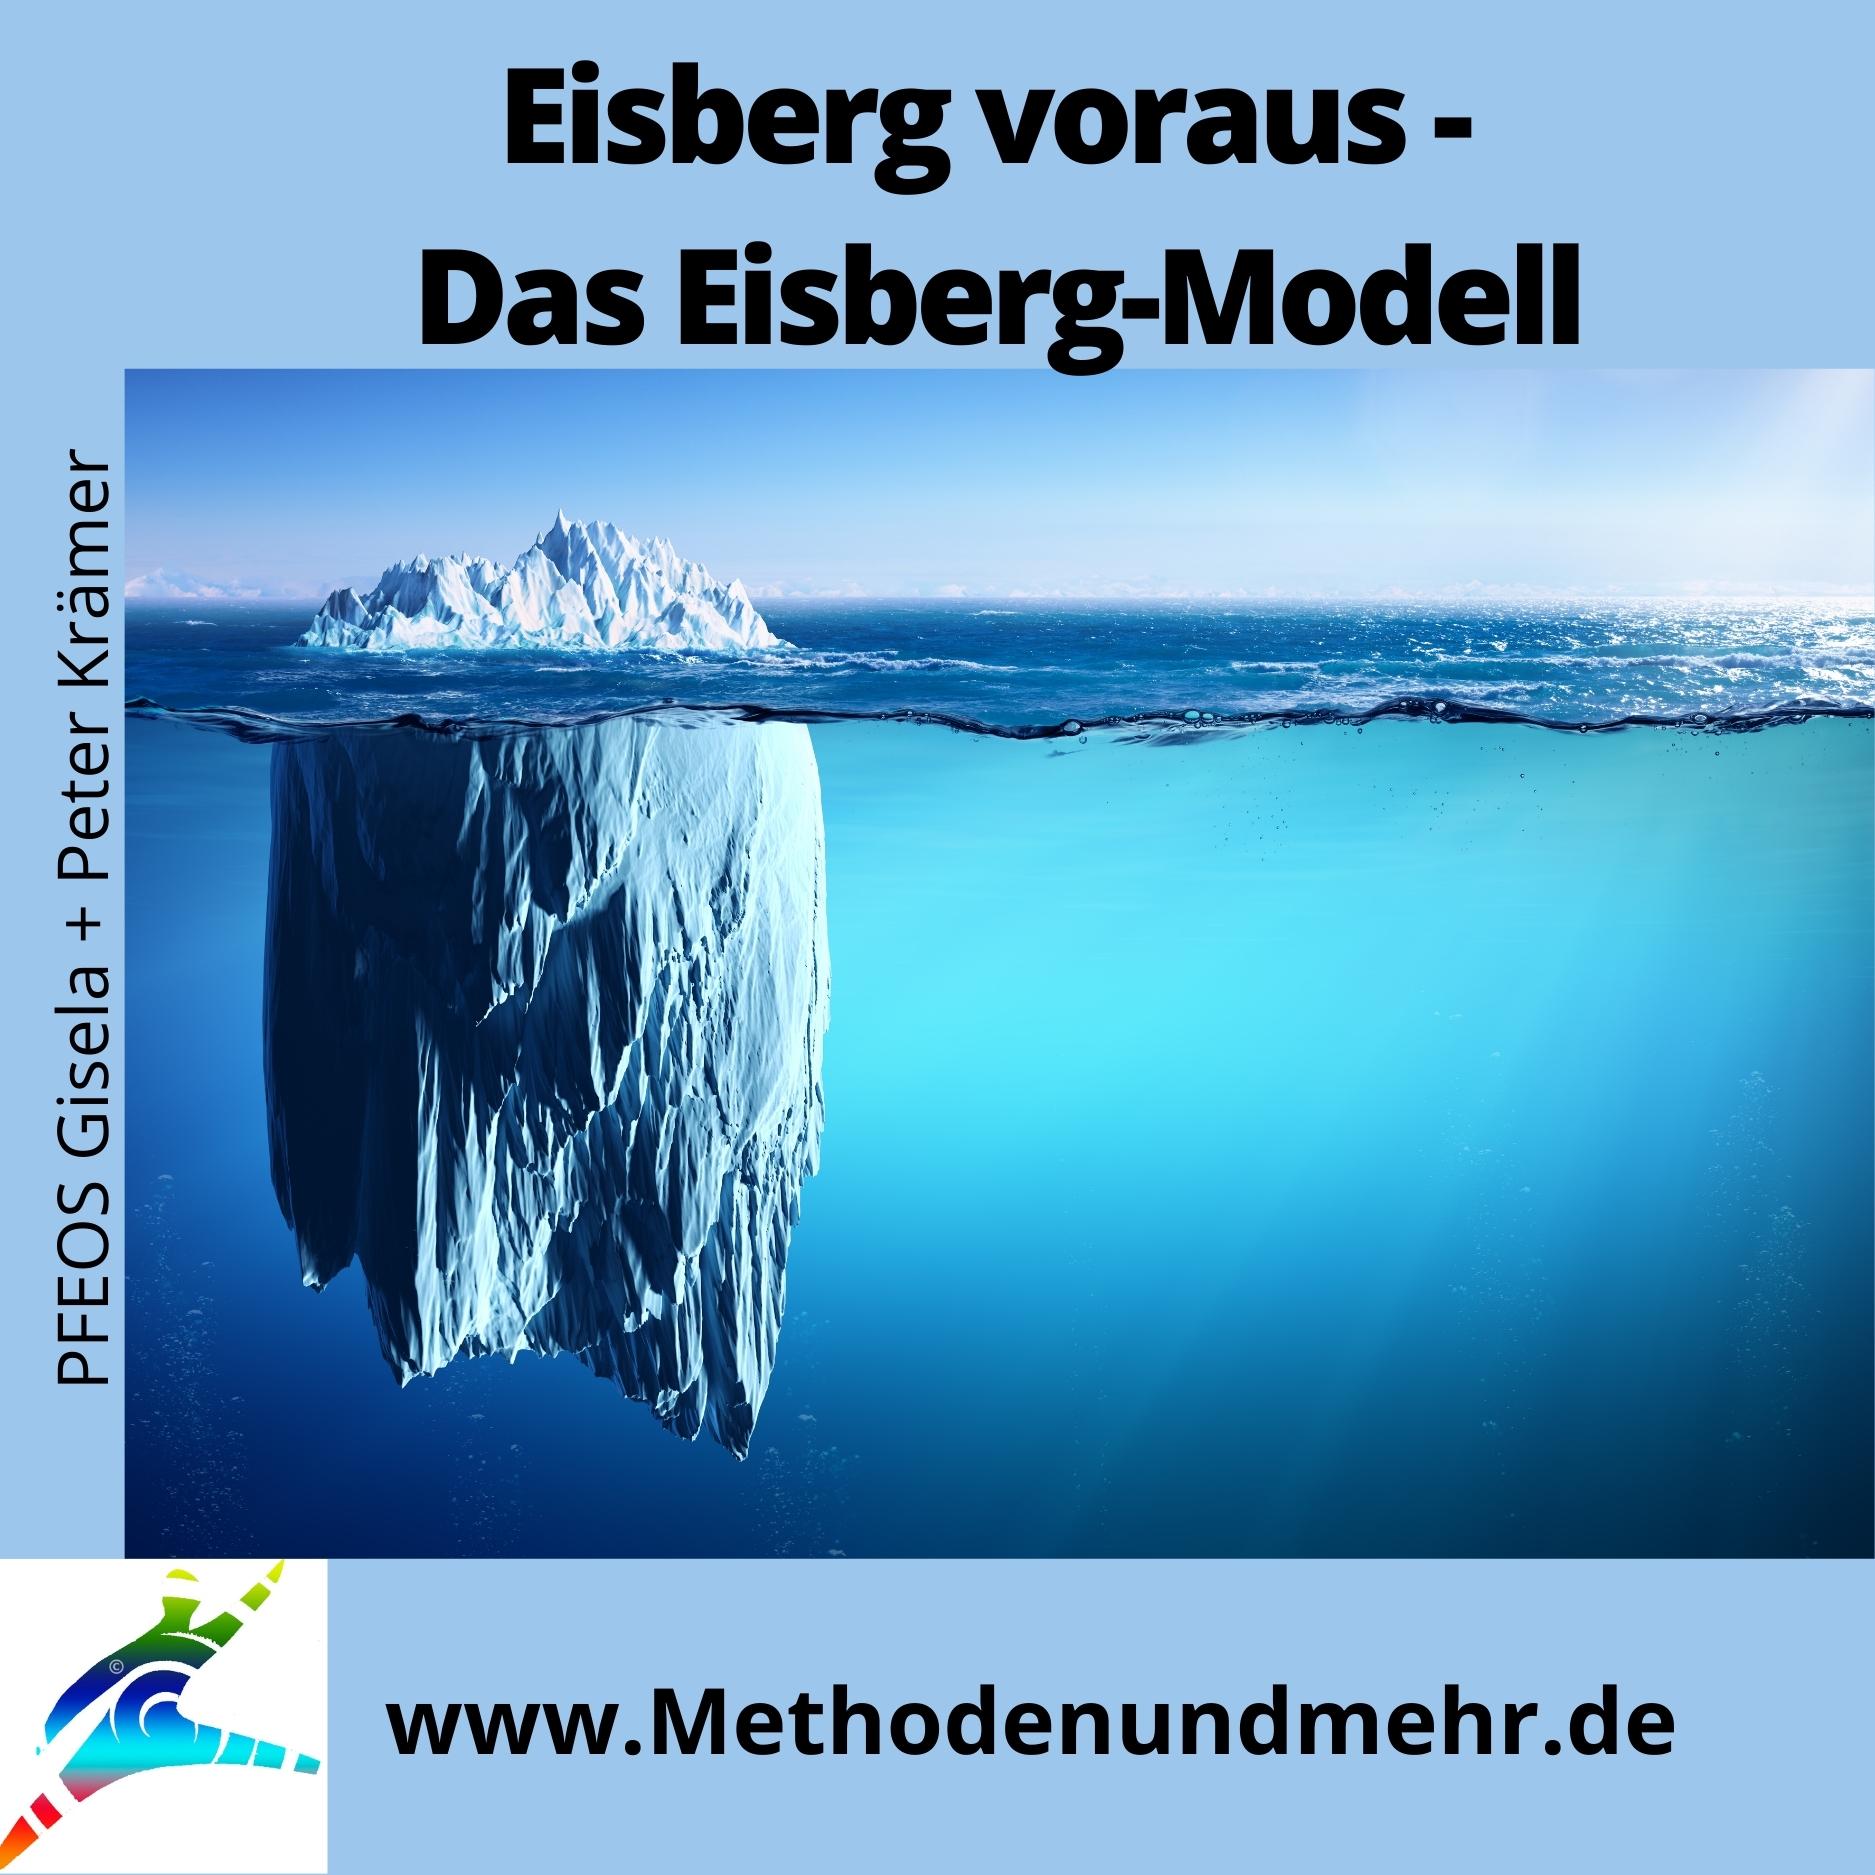 Eisberg voraus - Das Eisberg-Modell